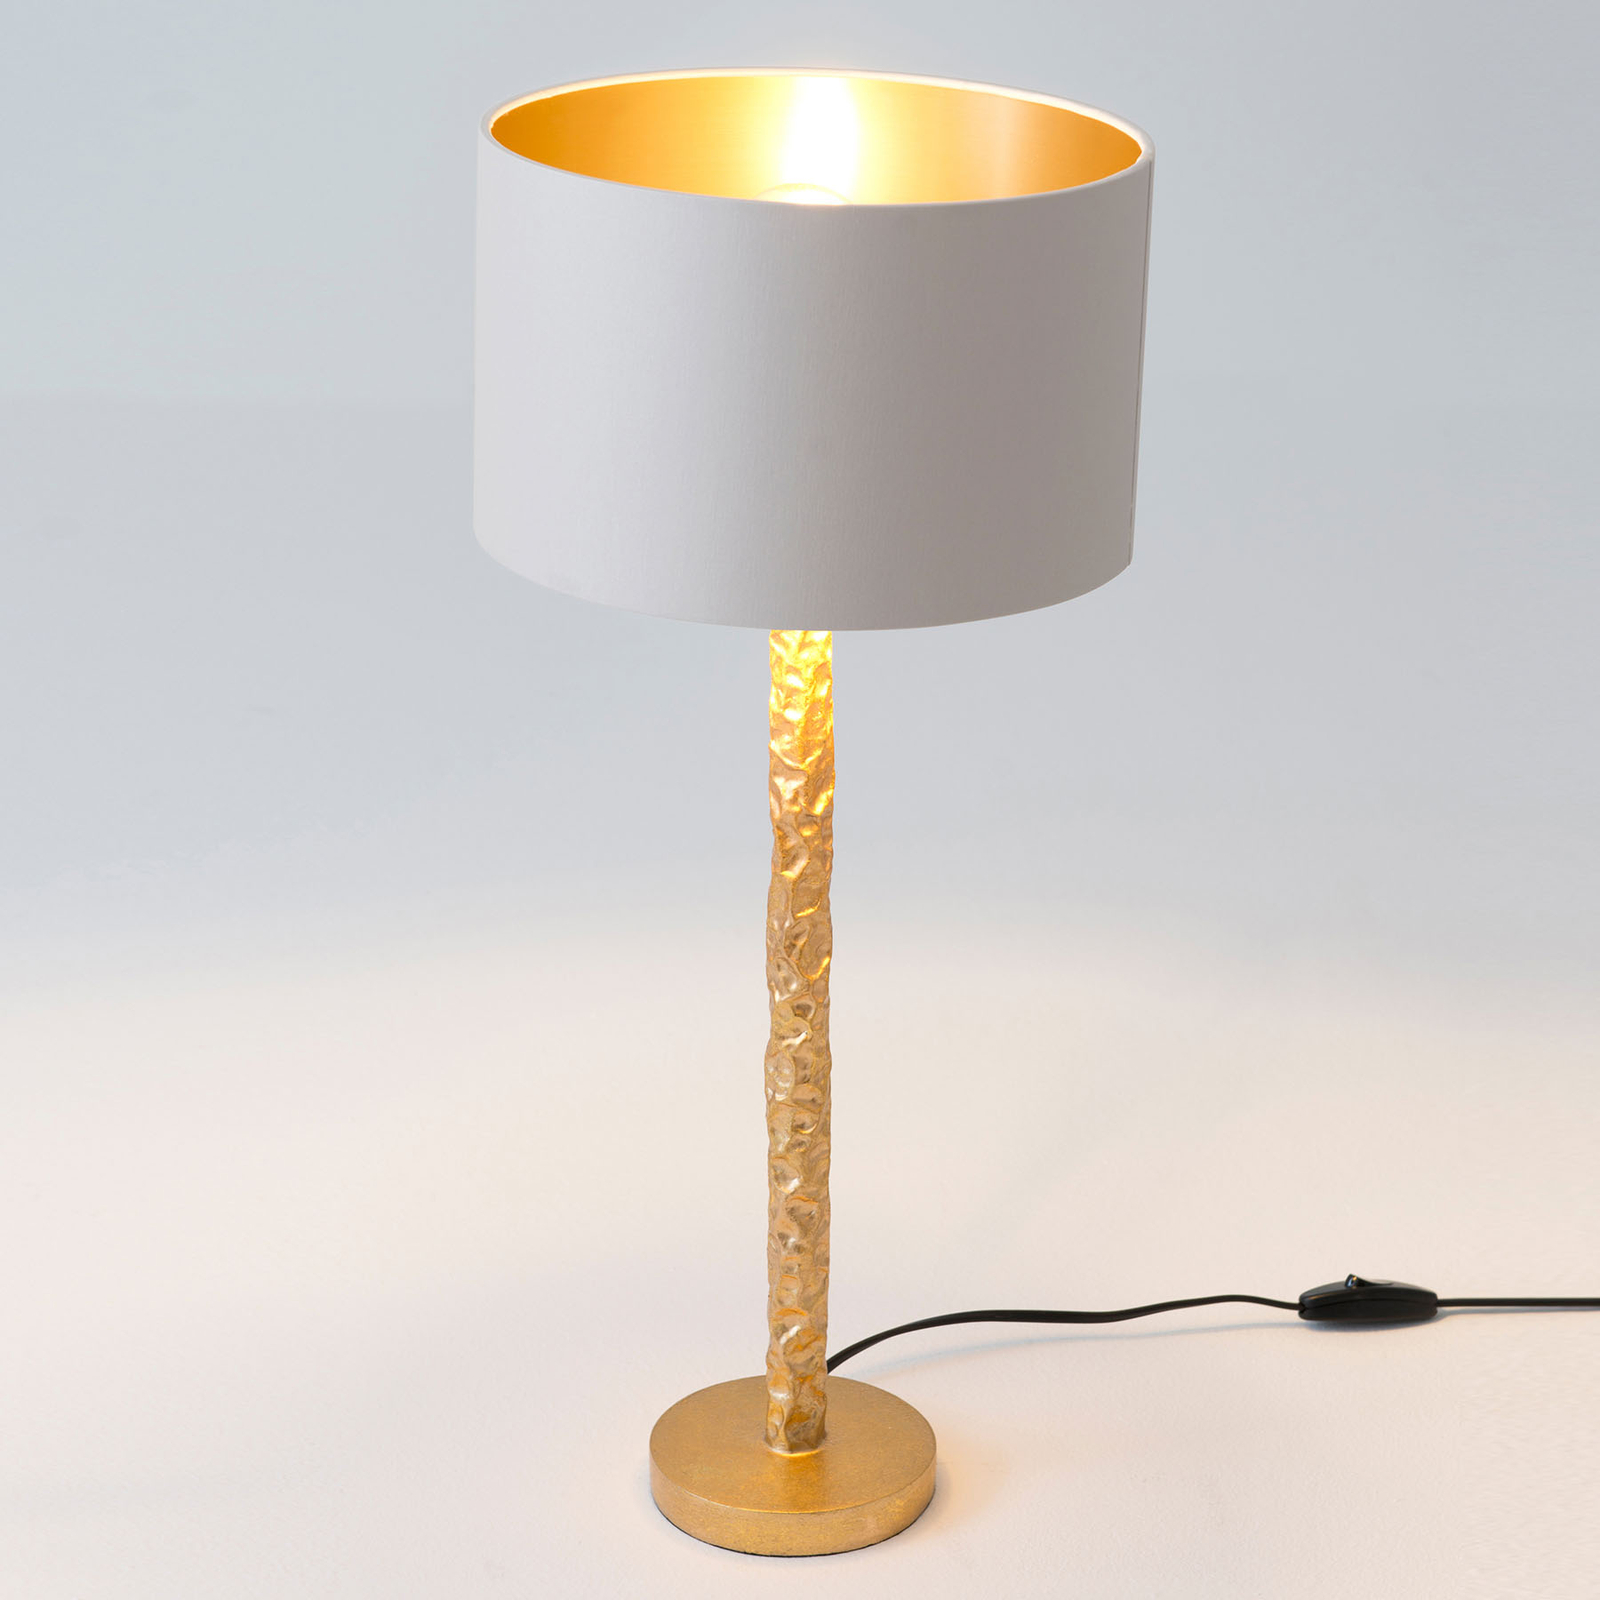 Tafellamp Cancelliere Rotonda wit/goud 57 cm